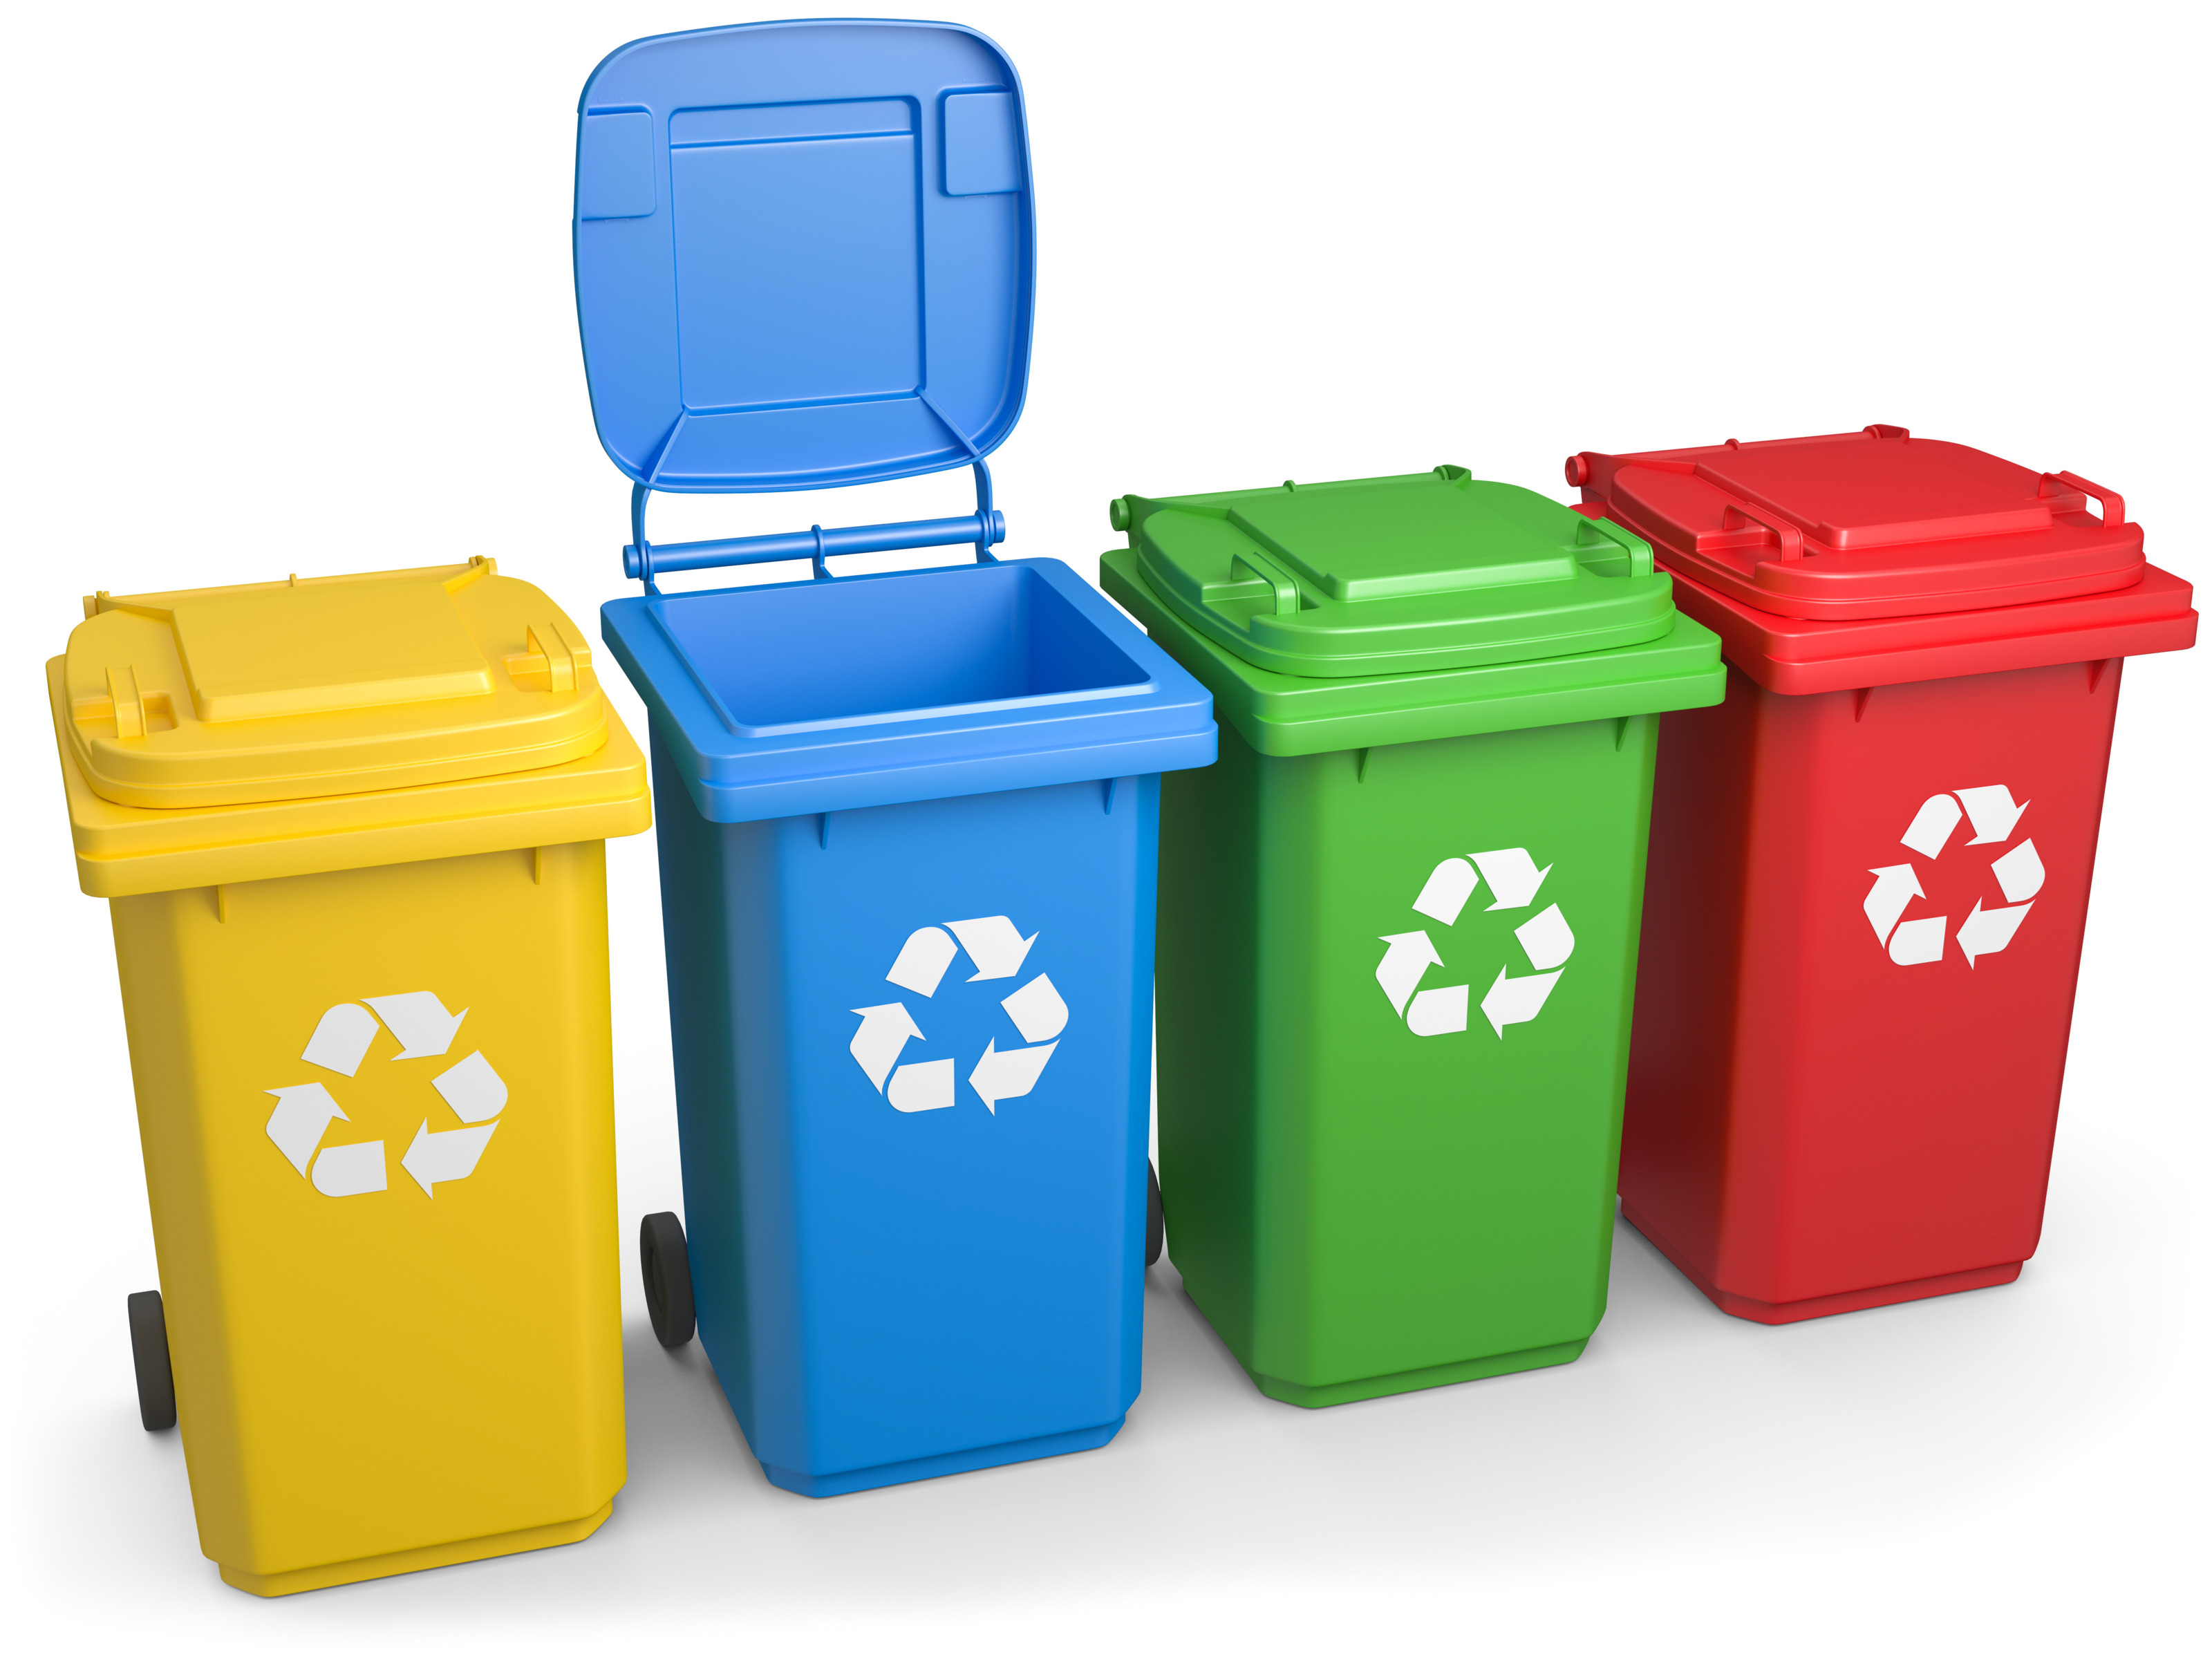 Illustration von vier verschiedenfarbigen Mülltonnen in gelb, blau, grün und rot mit Recyclingzeichen an den Vorderseiten - drei im Kreis verlaufende weiße Pfeile; die blaue Mülltonne hat den Deckel geöffnet, allesamt auf weißem Hintergrund